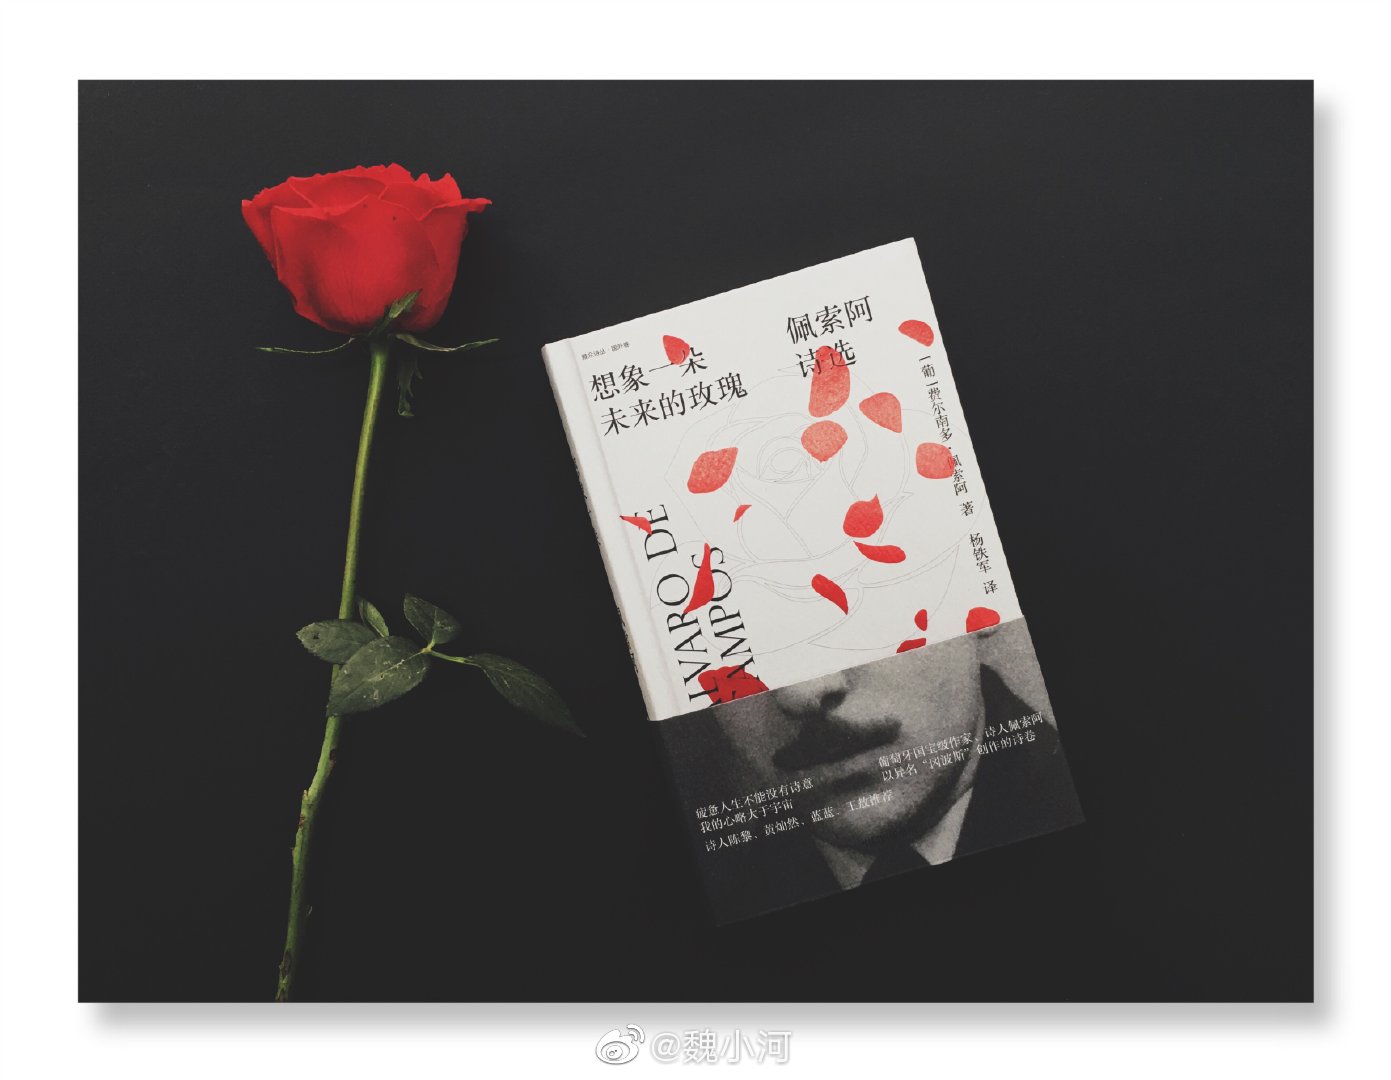 今天抽送的书是佩索阿的诗集《想象一朵未来的玫瑰》